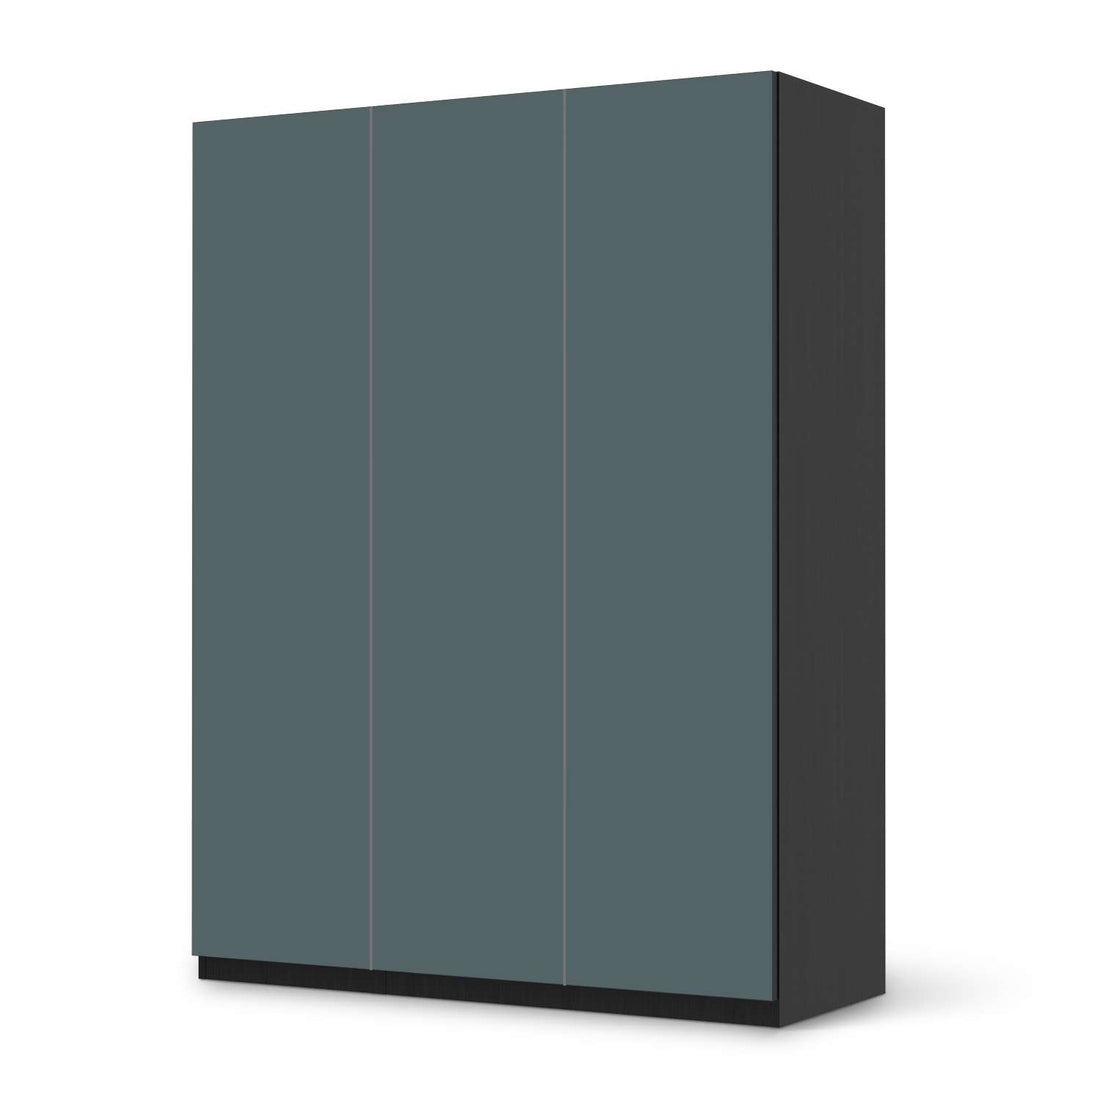 Folie für Möbel Blaugrau Light - IKEA Pax Schrank 201 cm Höhe - 3 Türen - schwarz